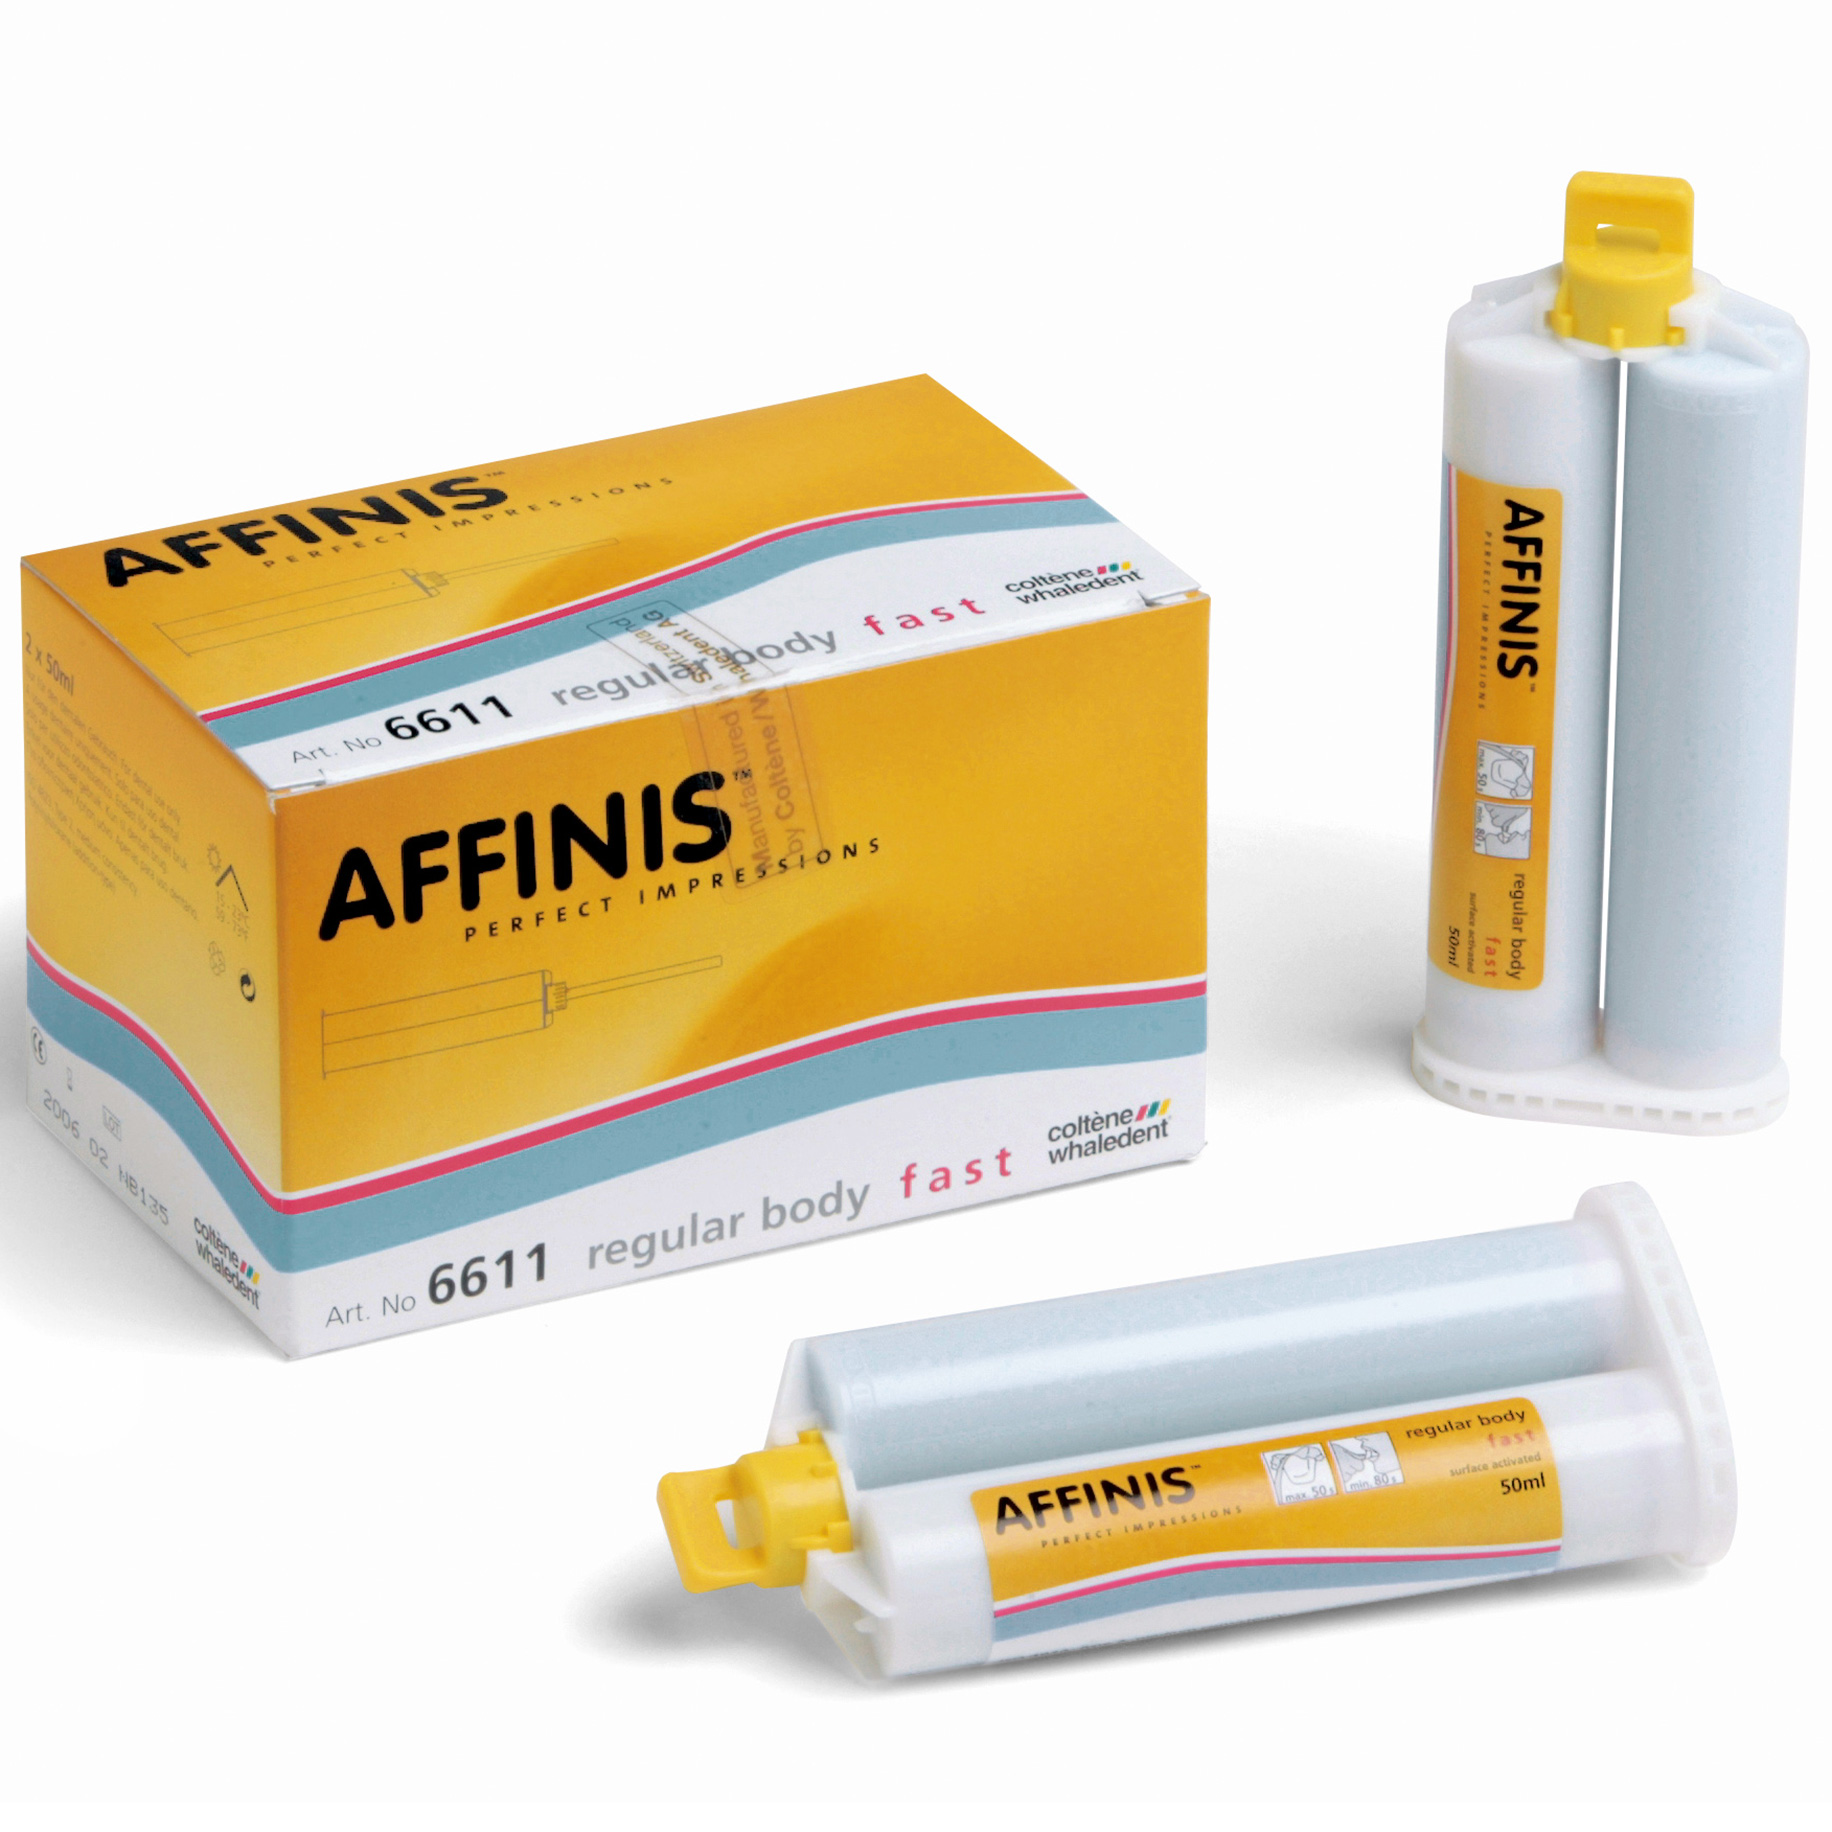 Affinis Impression Material Wash - Fast Regular Body (Ref. 6611) 